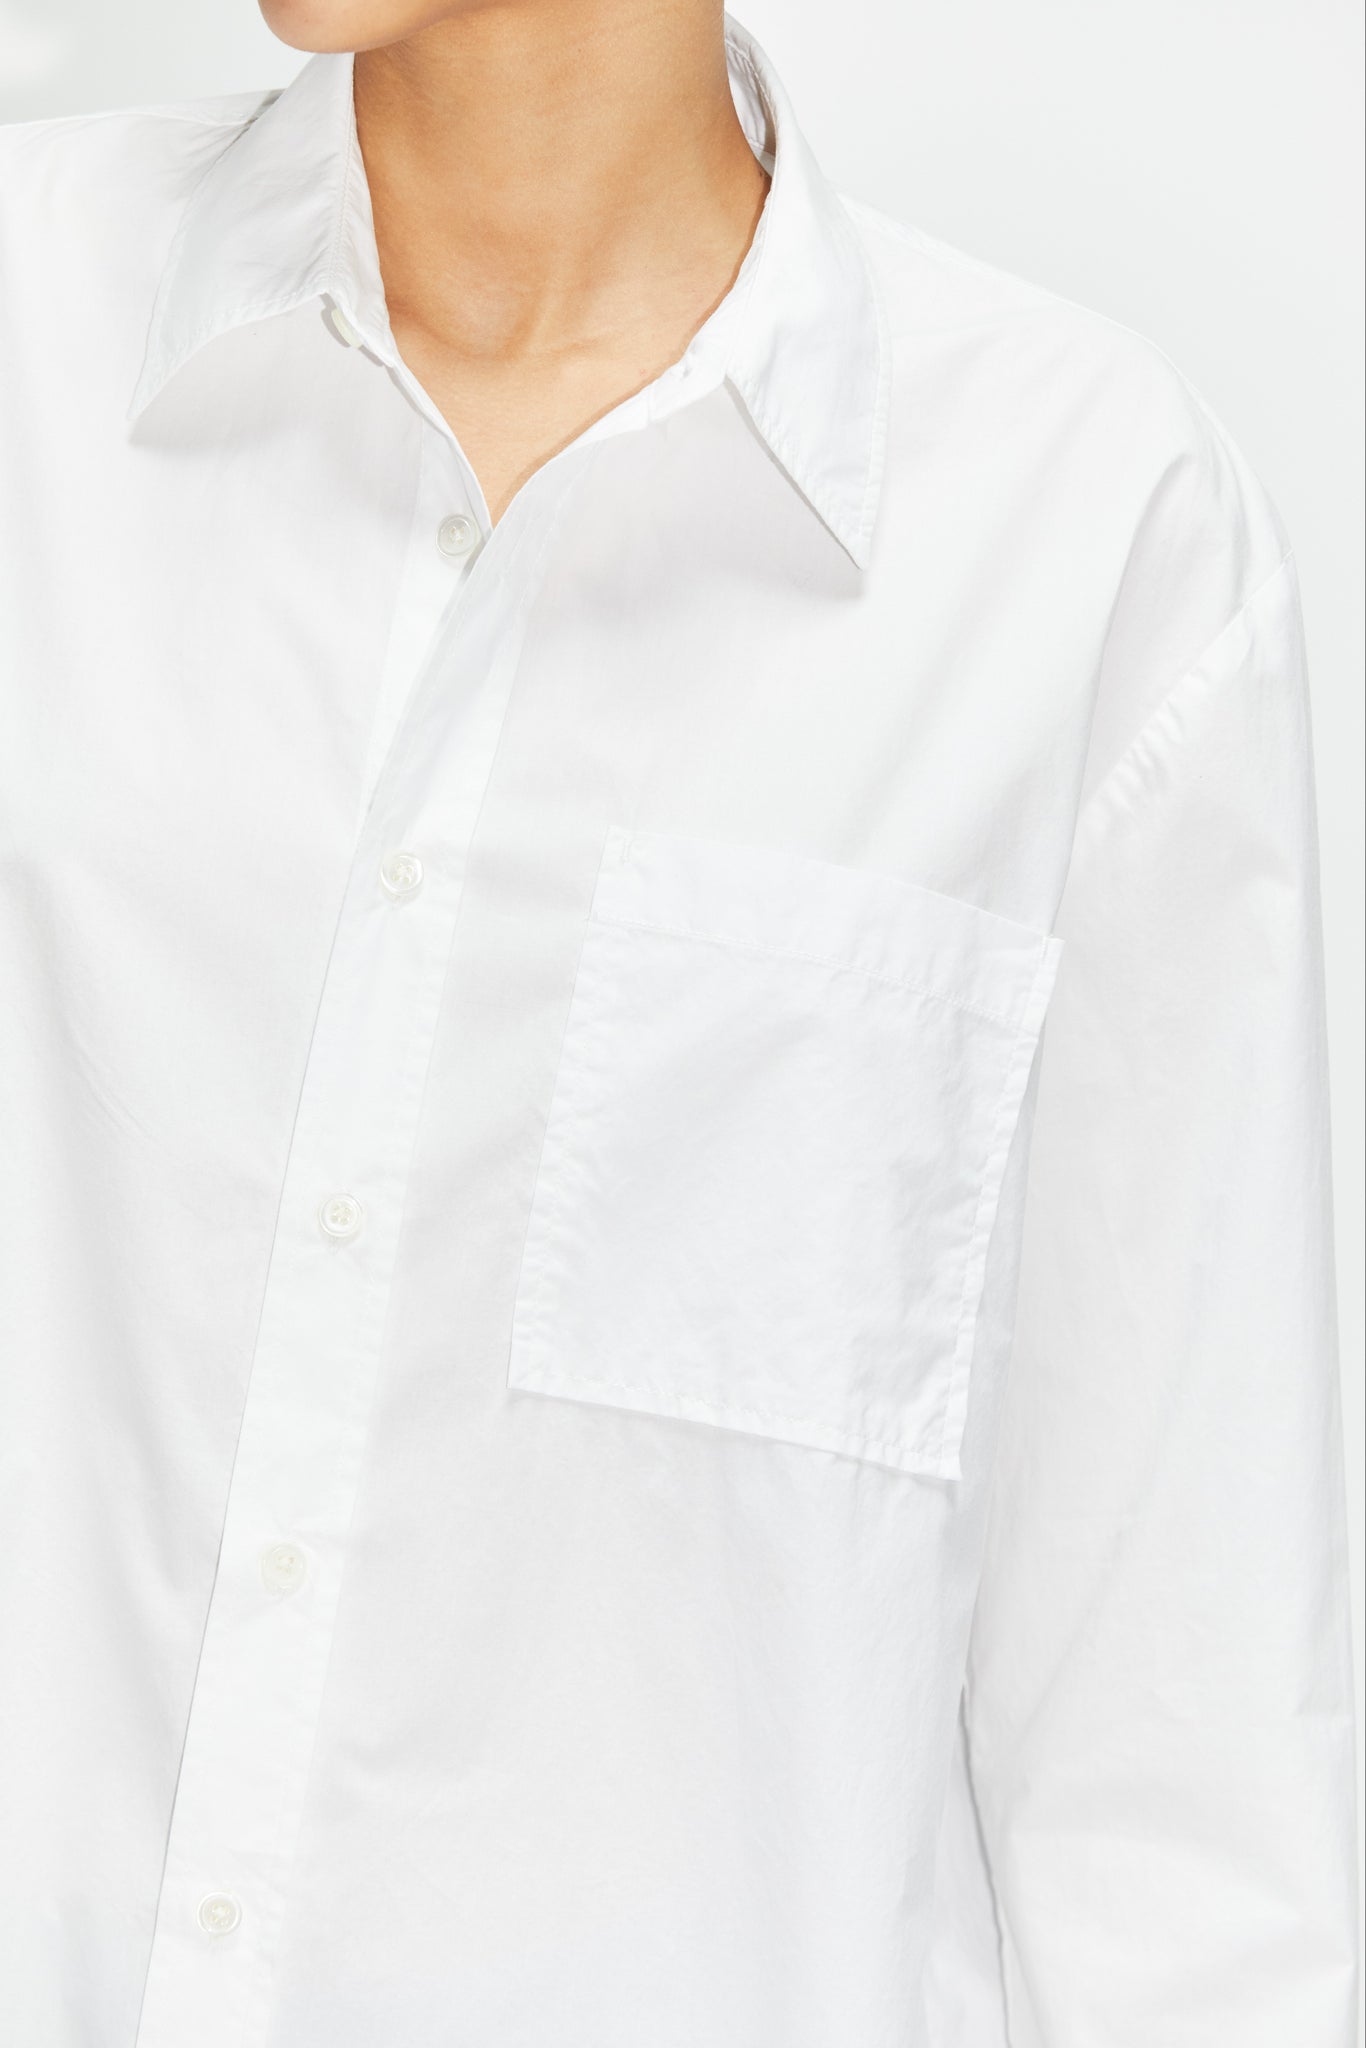 Elma edit shirt by Hope - white poplin